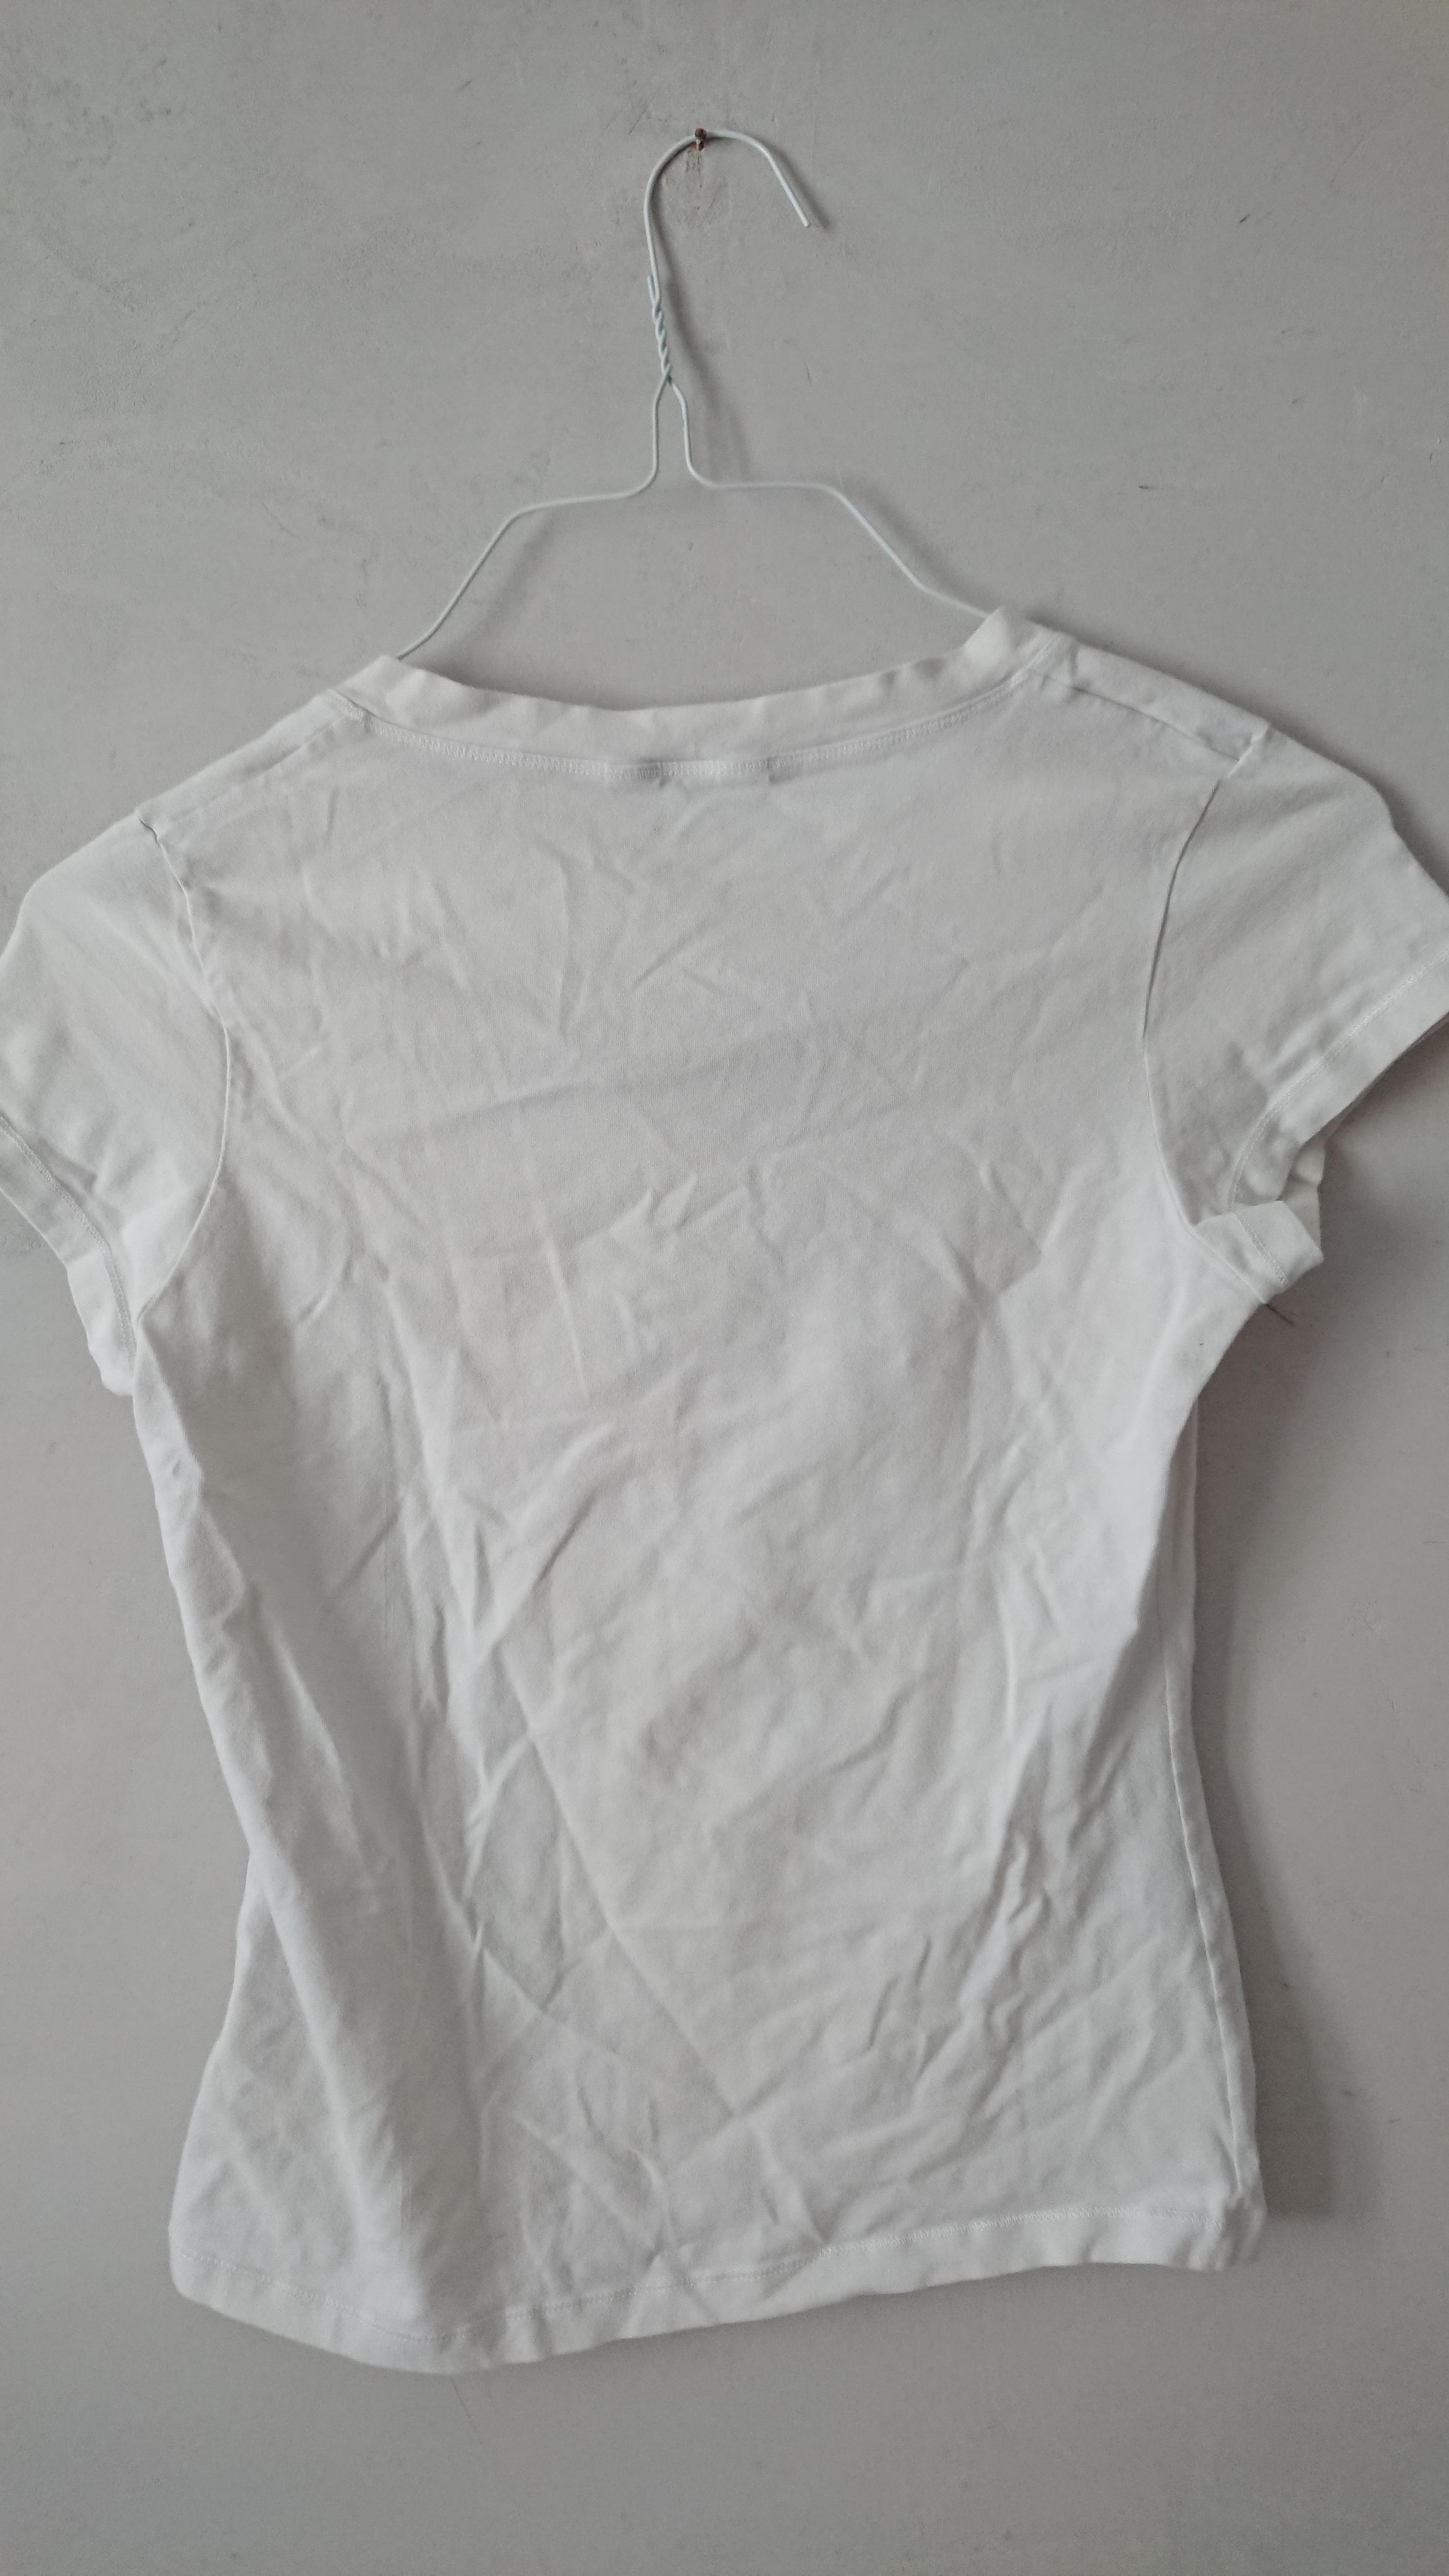 troc de troc tshirt blanc avec fleur taille équivalente 38/40 image 1